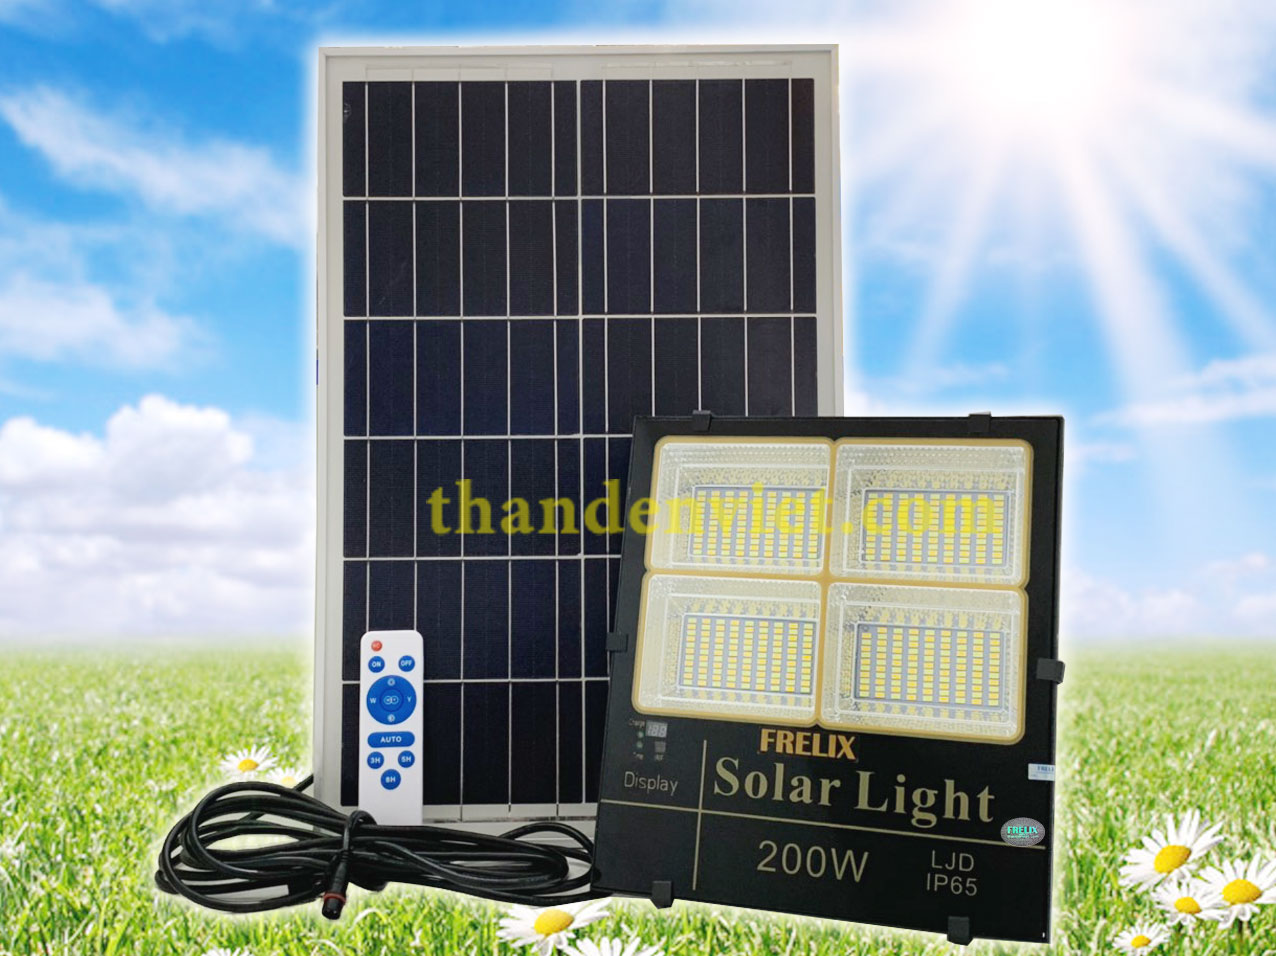 Đèn năng lượng mặt trời Frelix Solar Light LJD 200W 3 màu